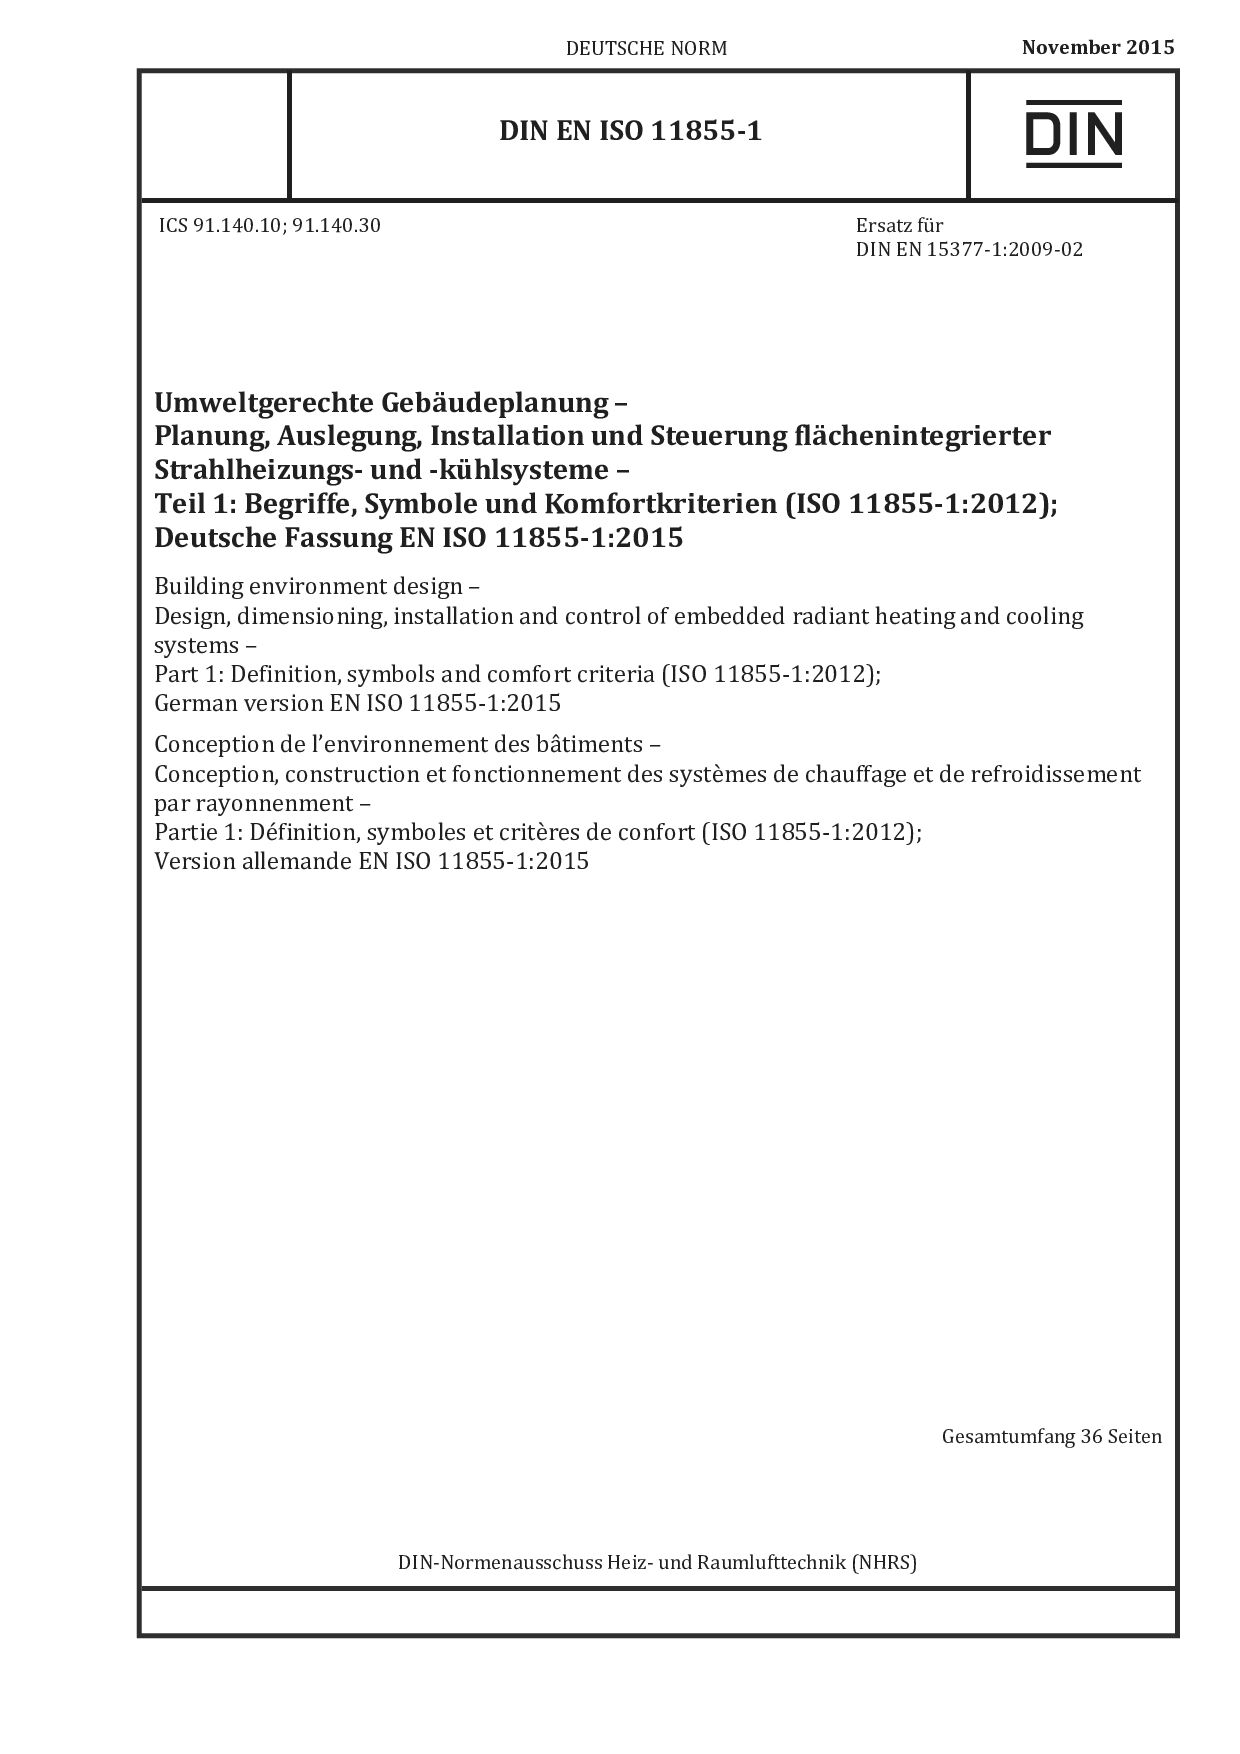 DIN EN ISO 11855-1:2015封面图